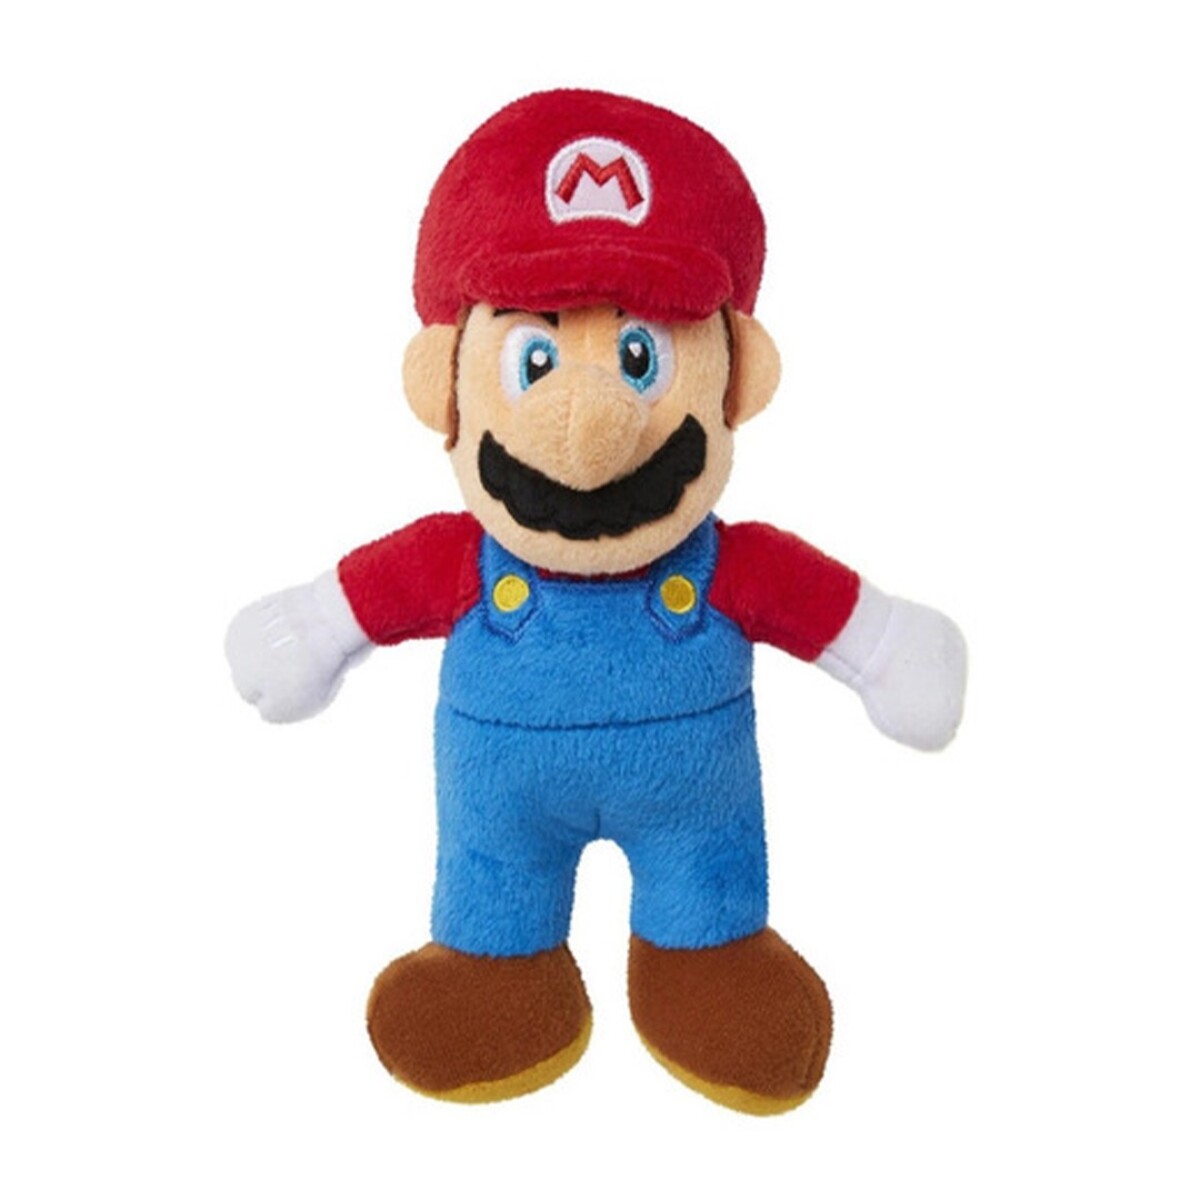 Peluche Super Mario Bross 62845 20 cm - 001 